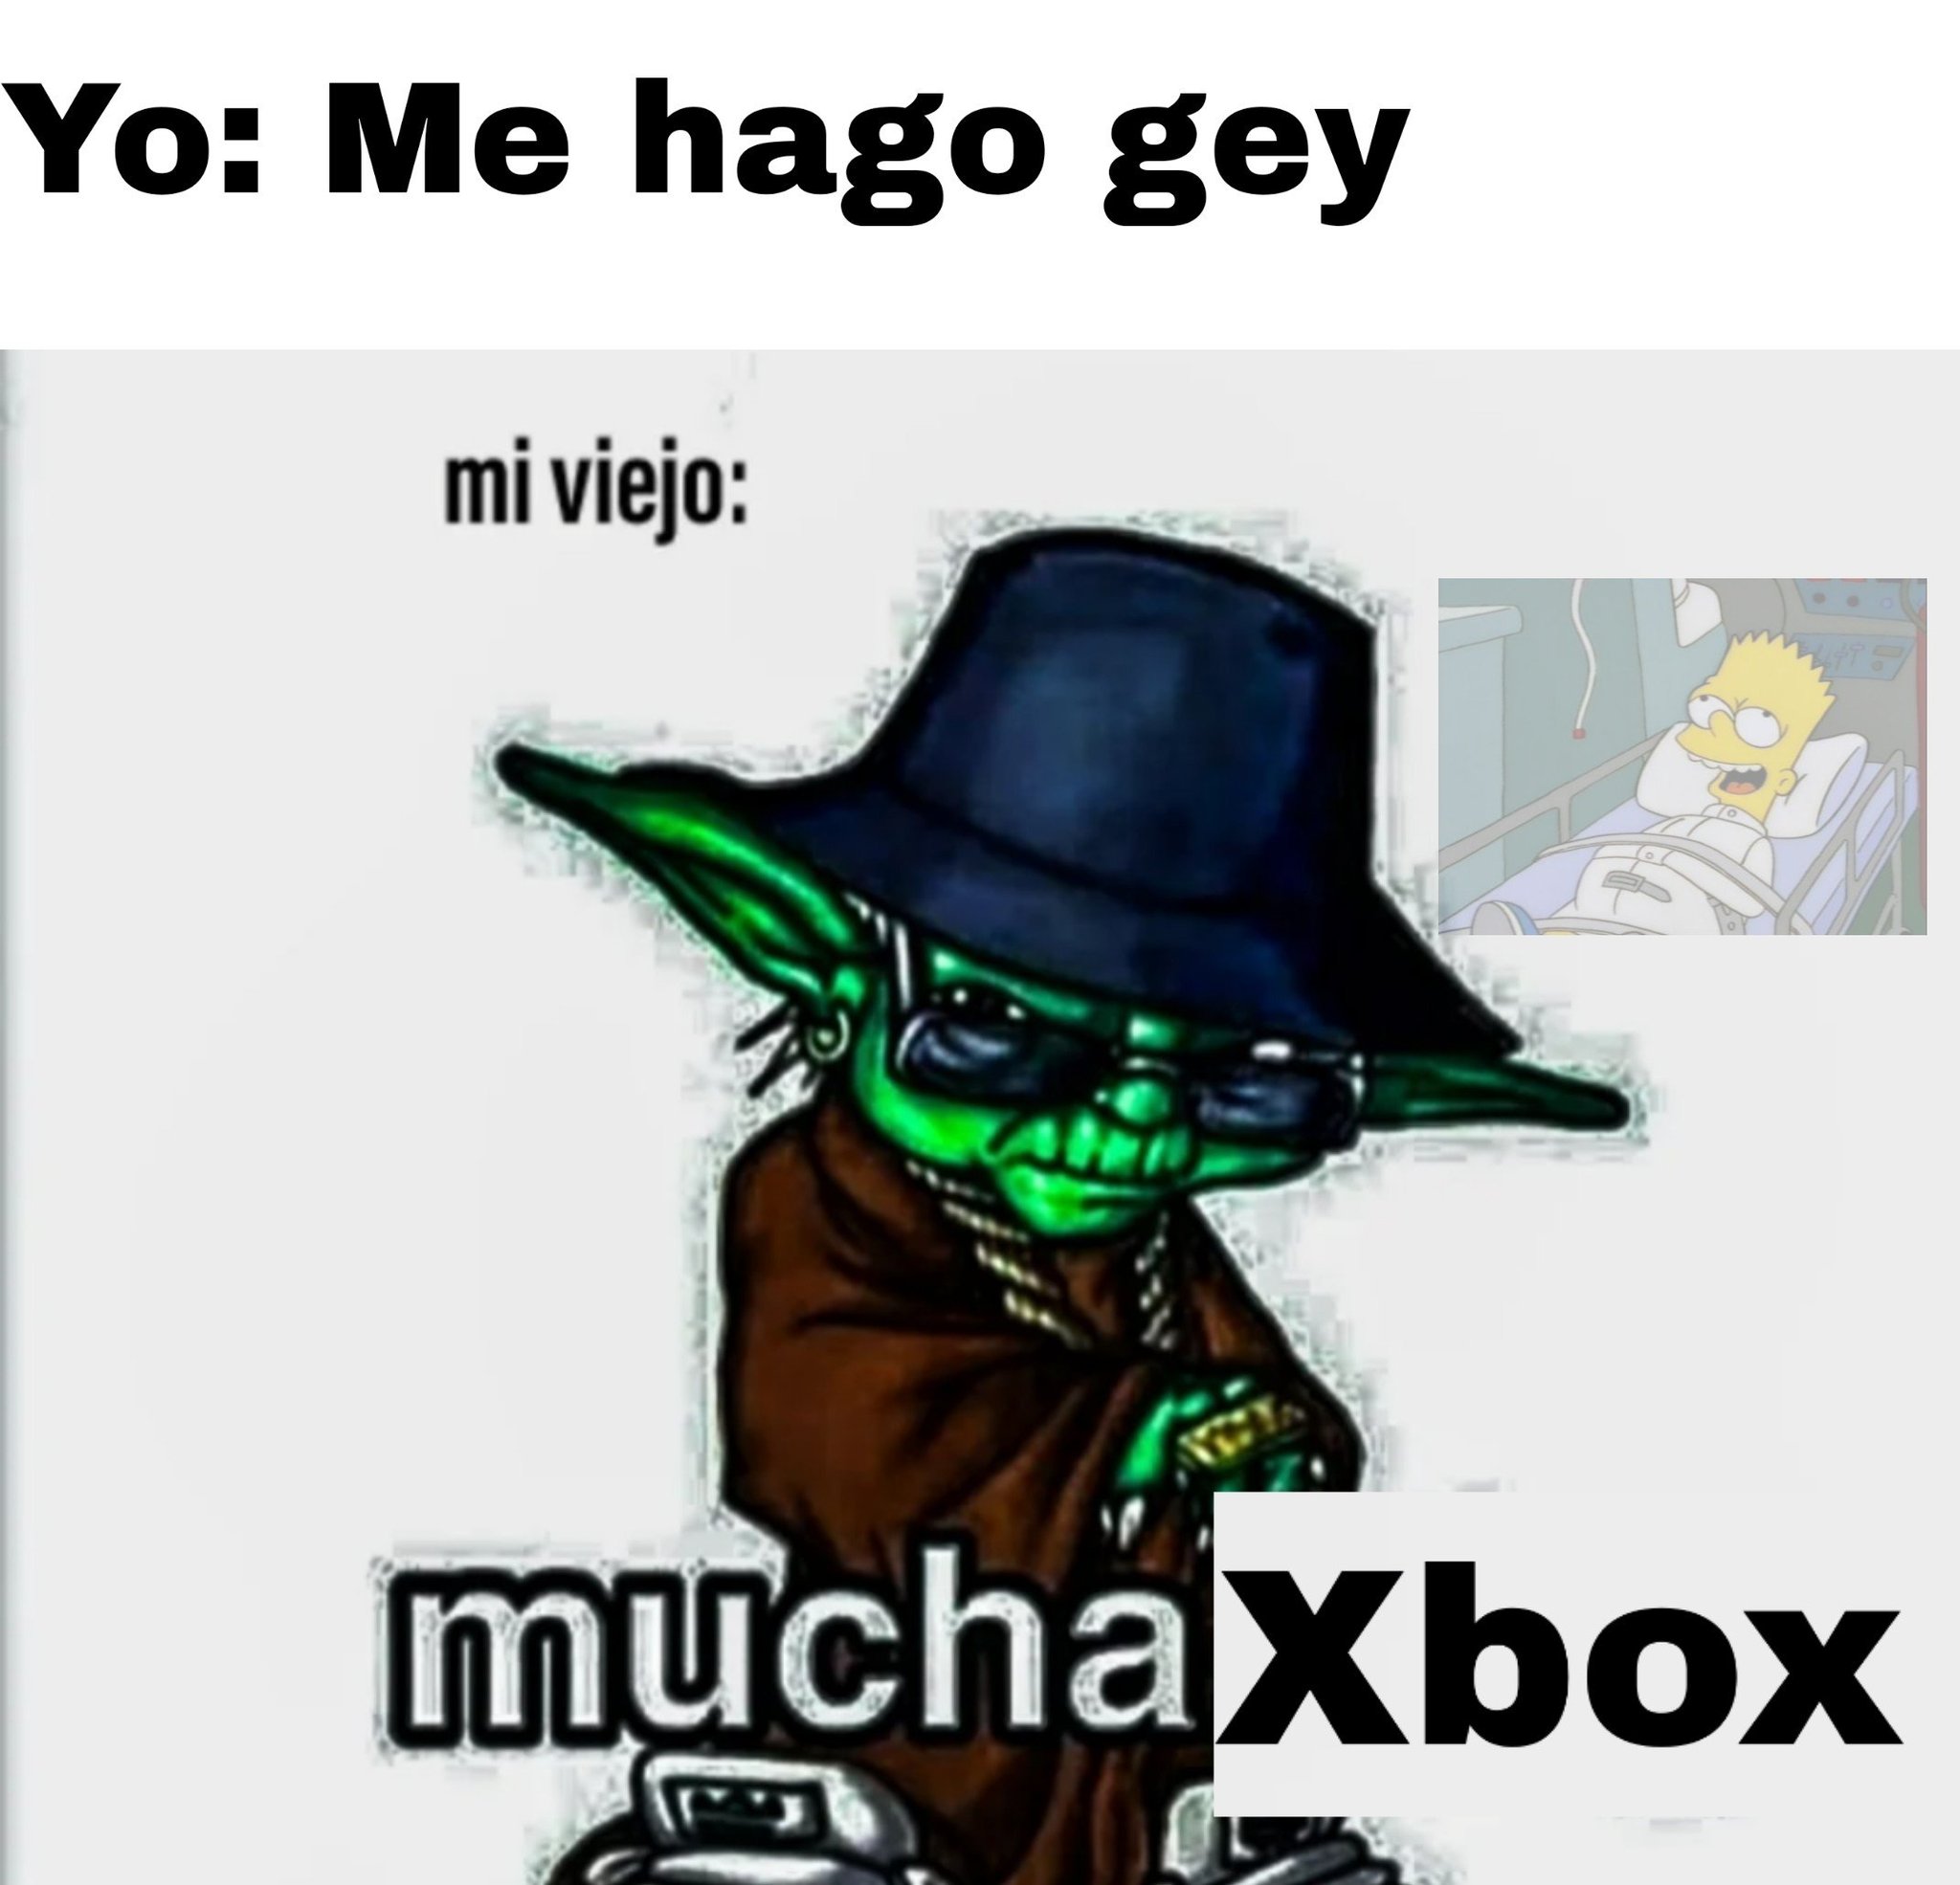 Mucha/ xbox - meme